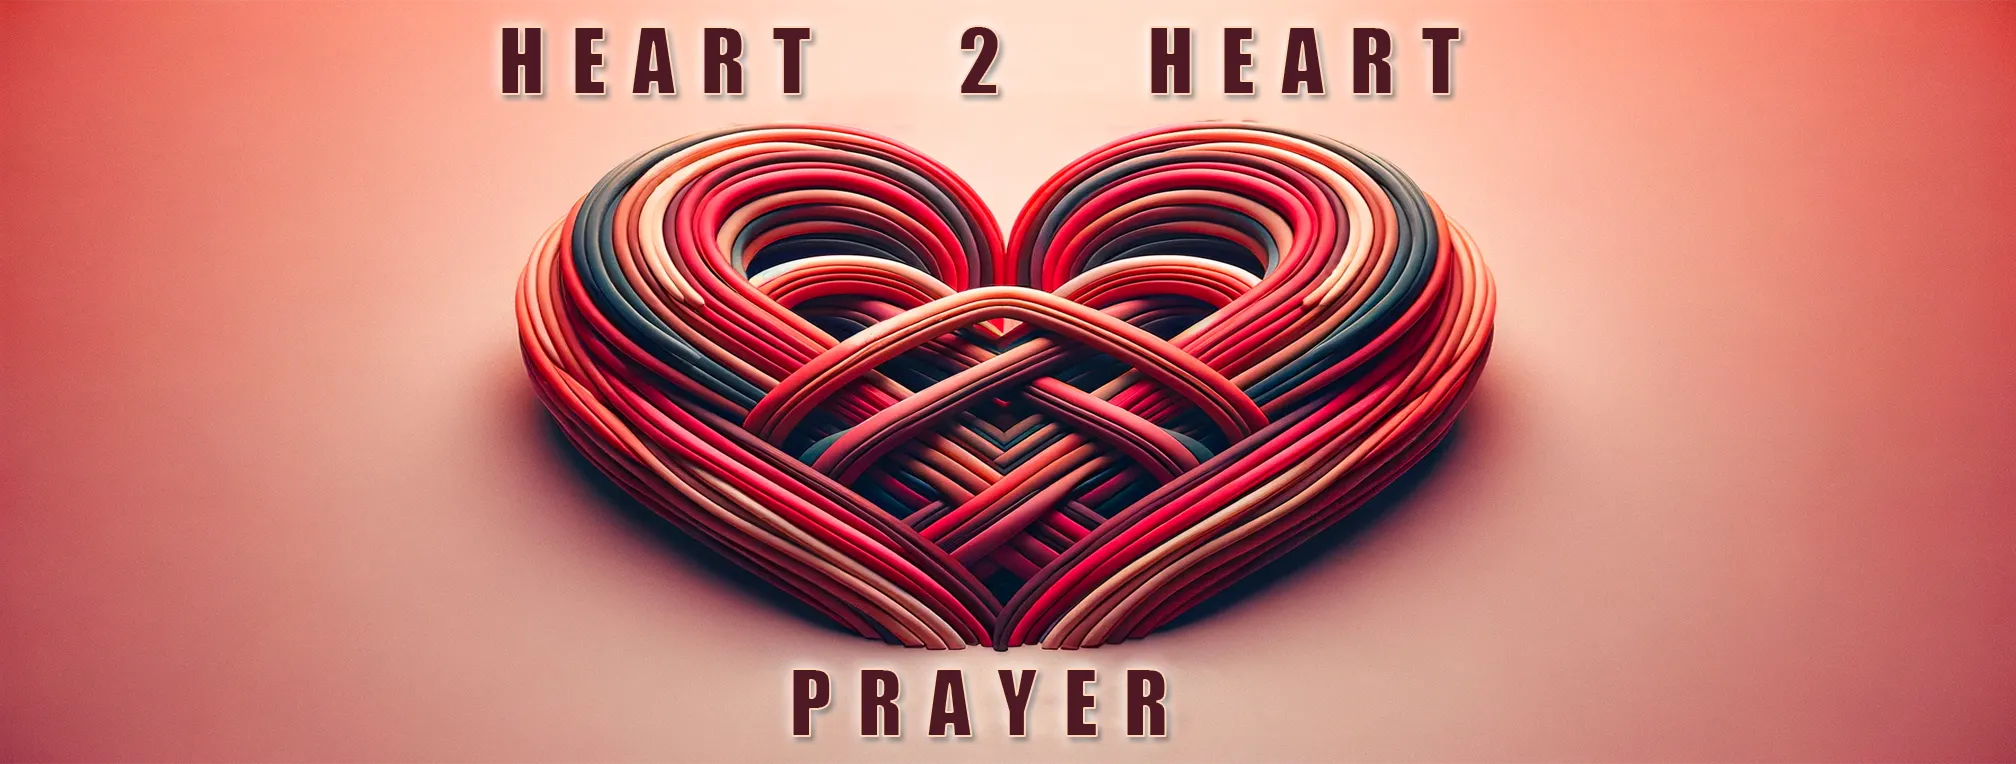 Heart 2 Heart Prayer